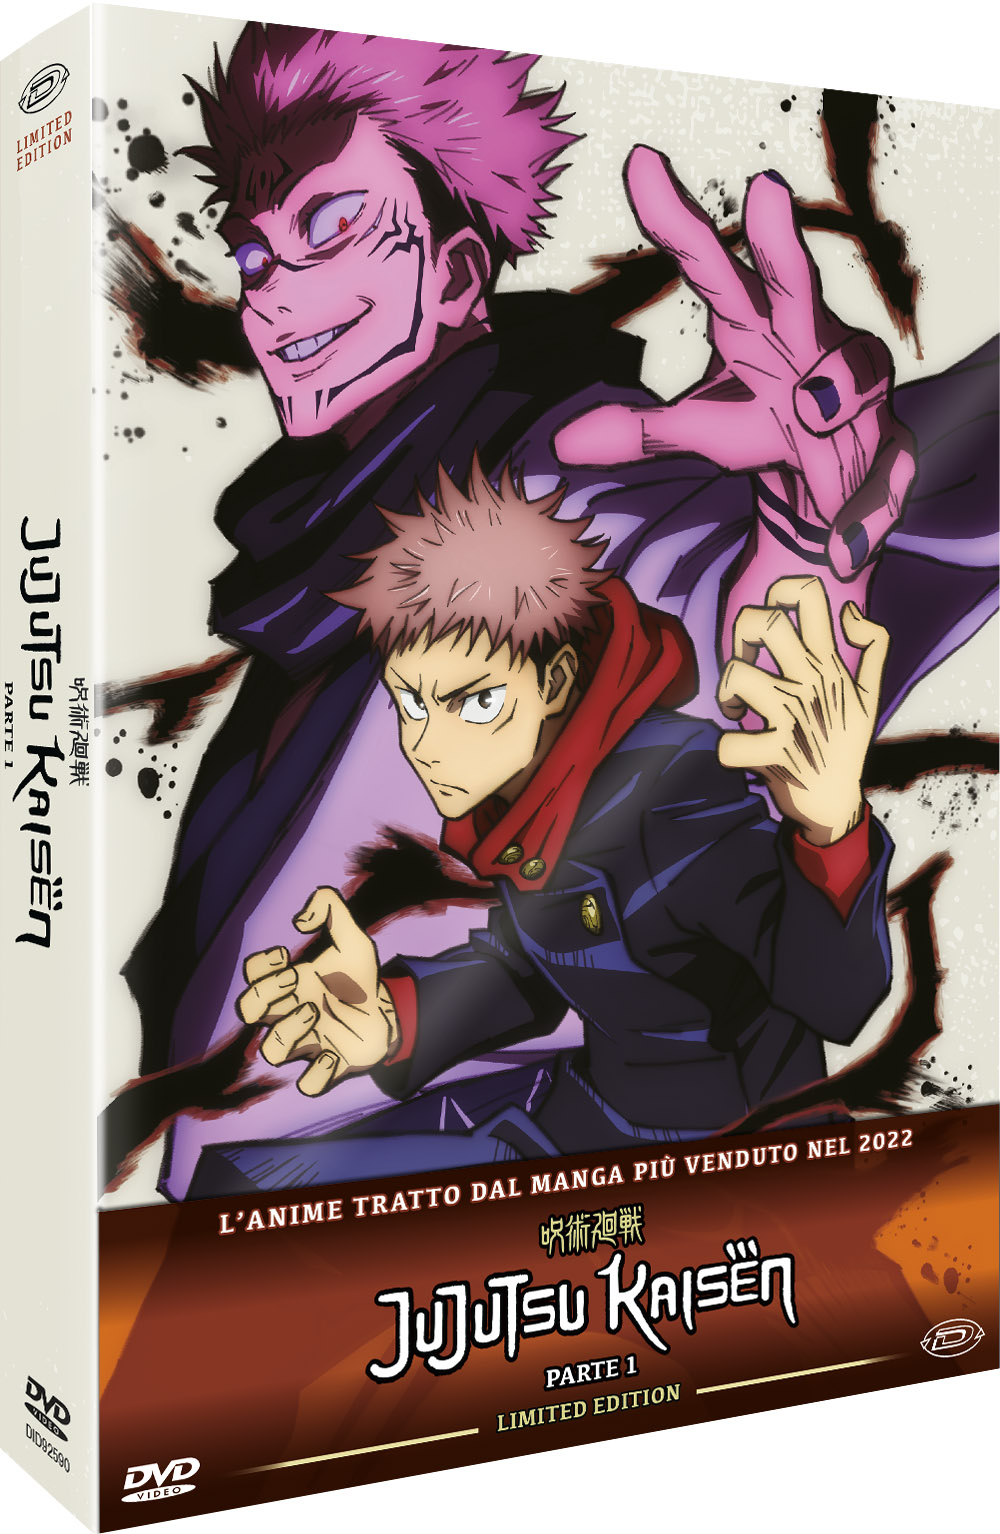 Dvd Jujutsu Kaisen - Limited Edition Box-Set Vol 01 (Eps.01-13) (3 Dvd) NUOVO SIGILLATO, EDIZIONE DEL 31/05/2023 SUBITO DISPONIBILE